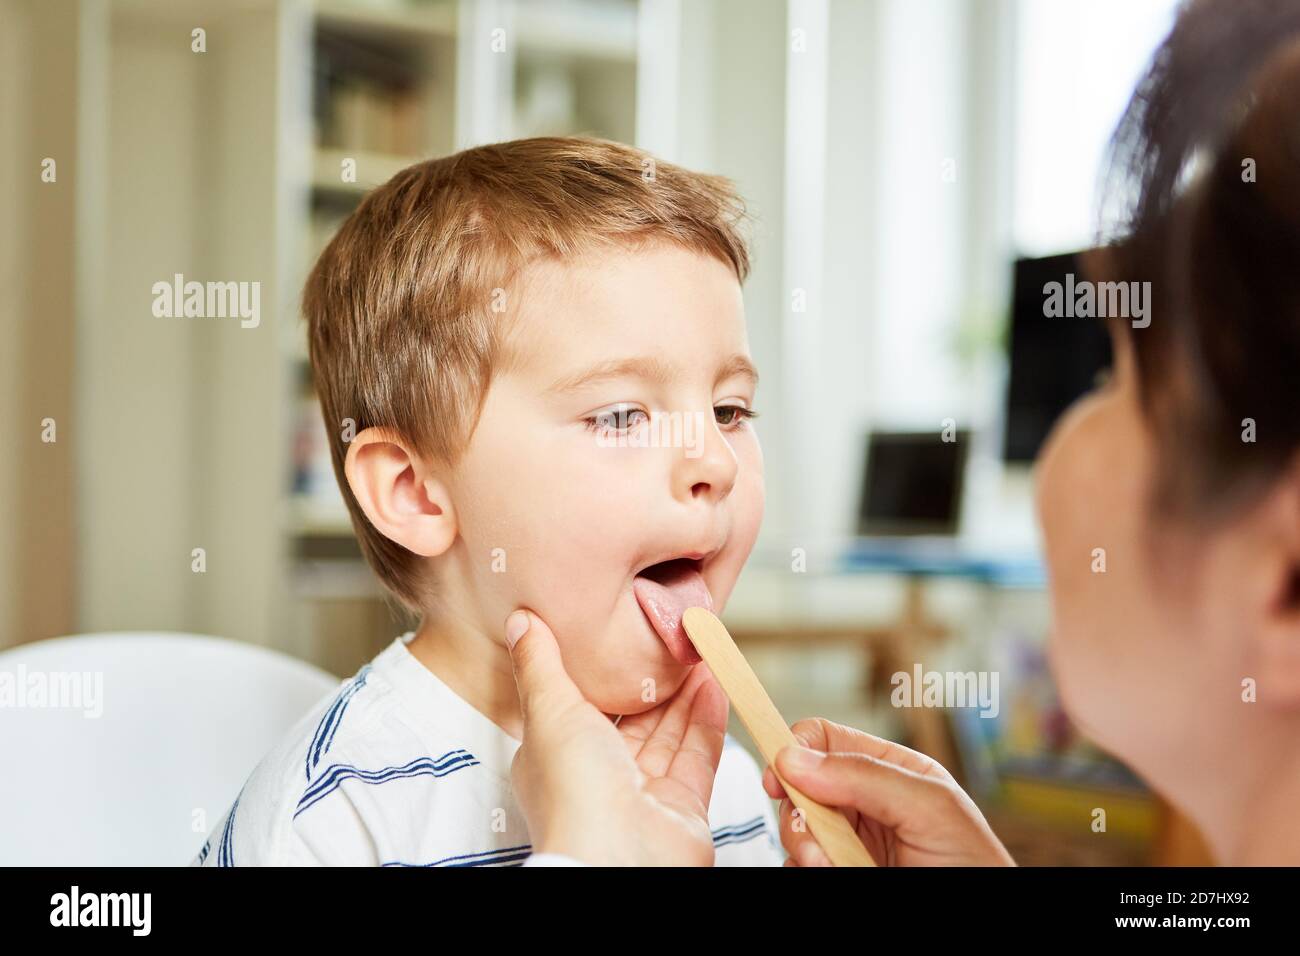 Le pédiatre examine la langue d'un enfant atteint d'amygdalite avec un spatule Banque D'Images